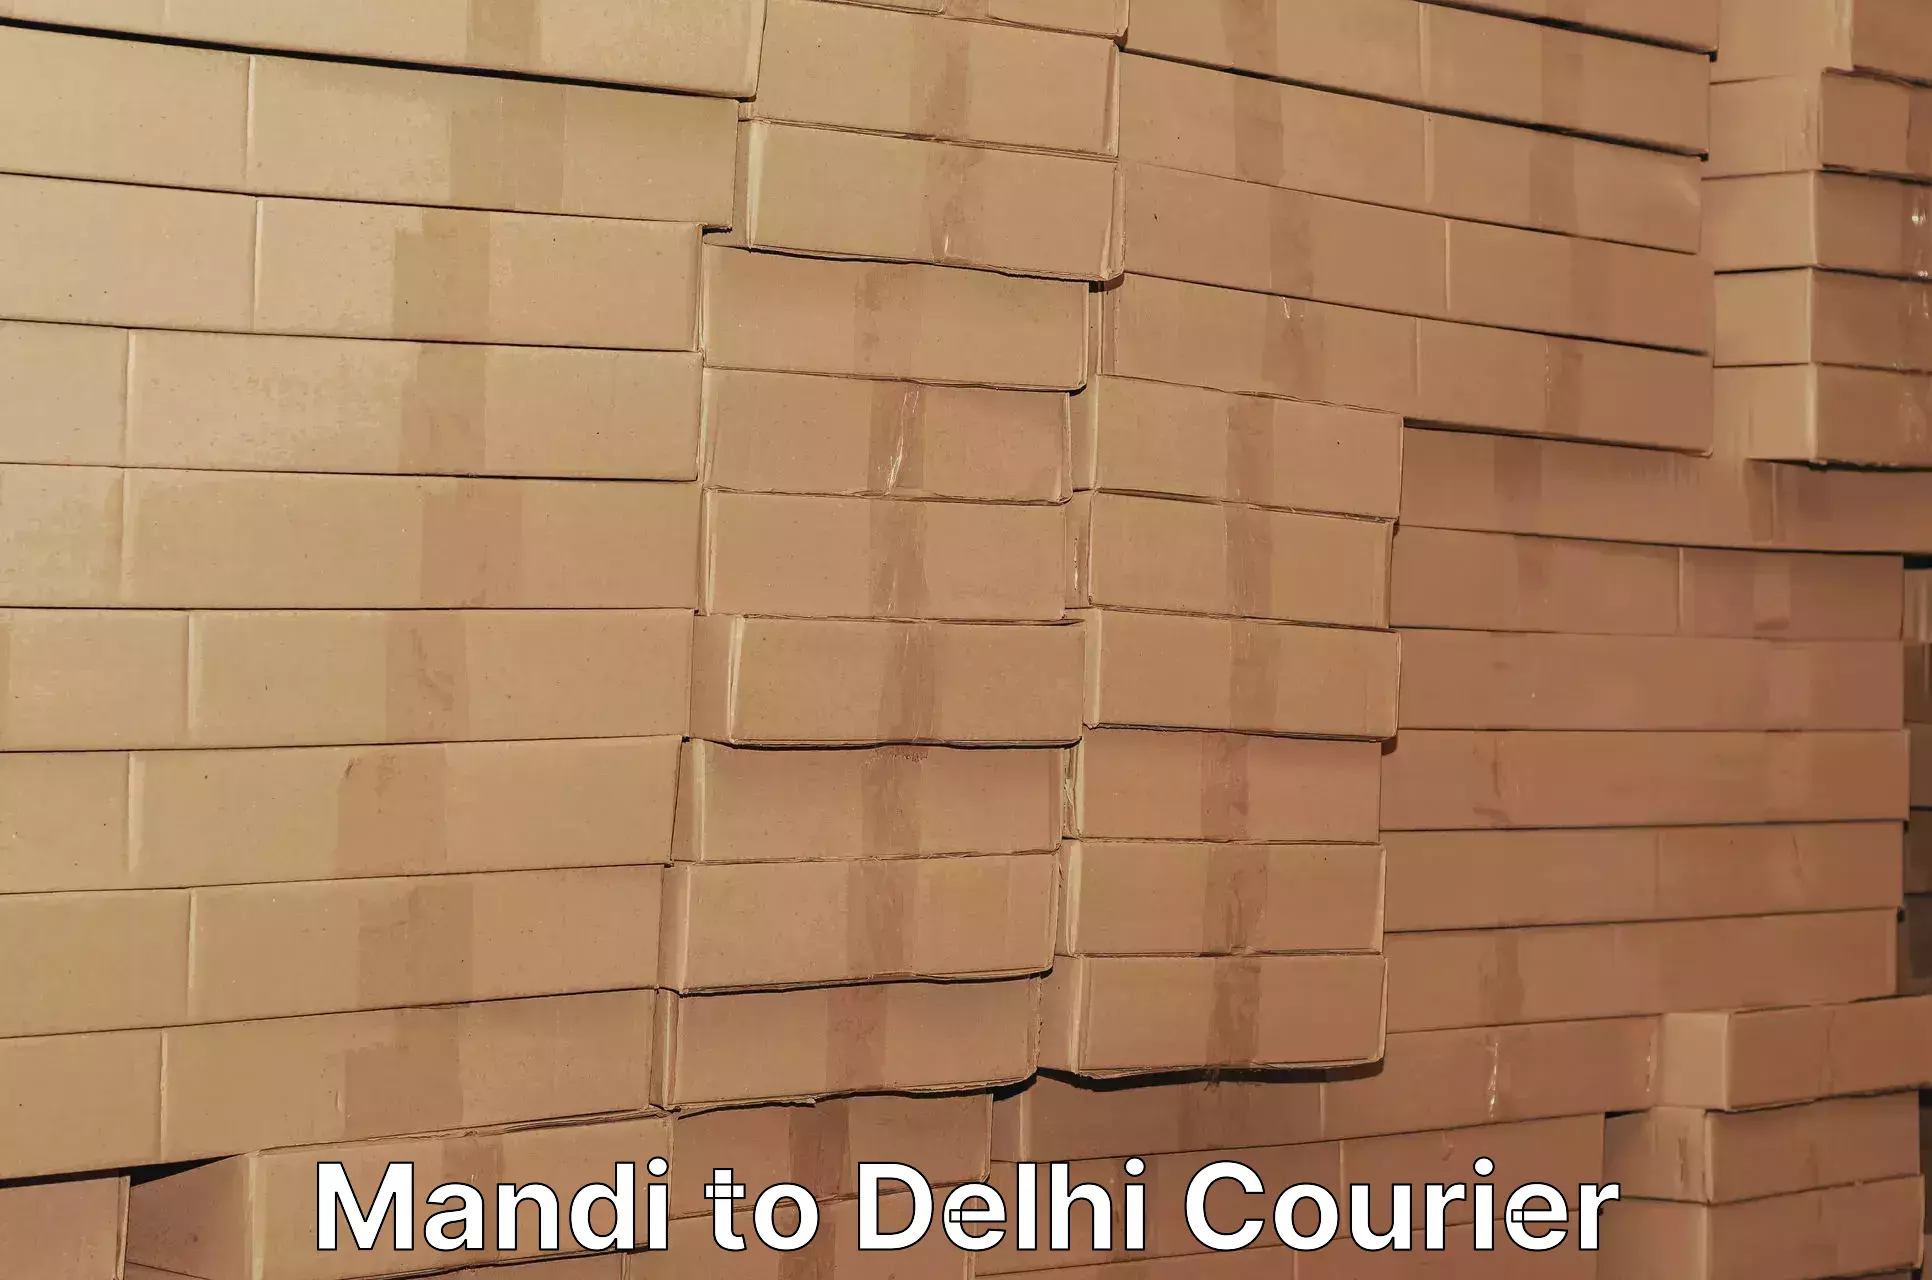 Efficient freight service Mandi to Delhi